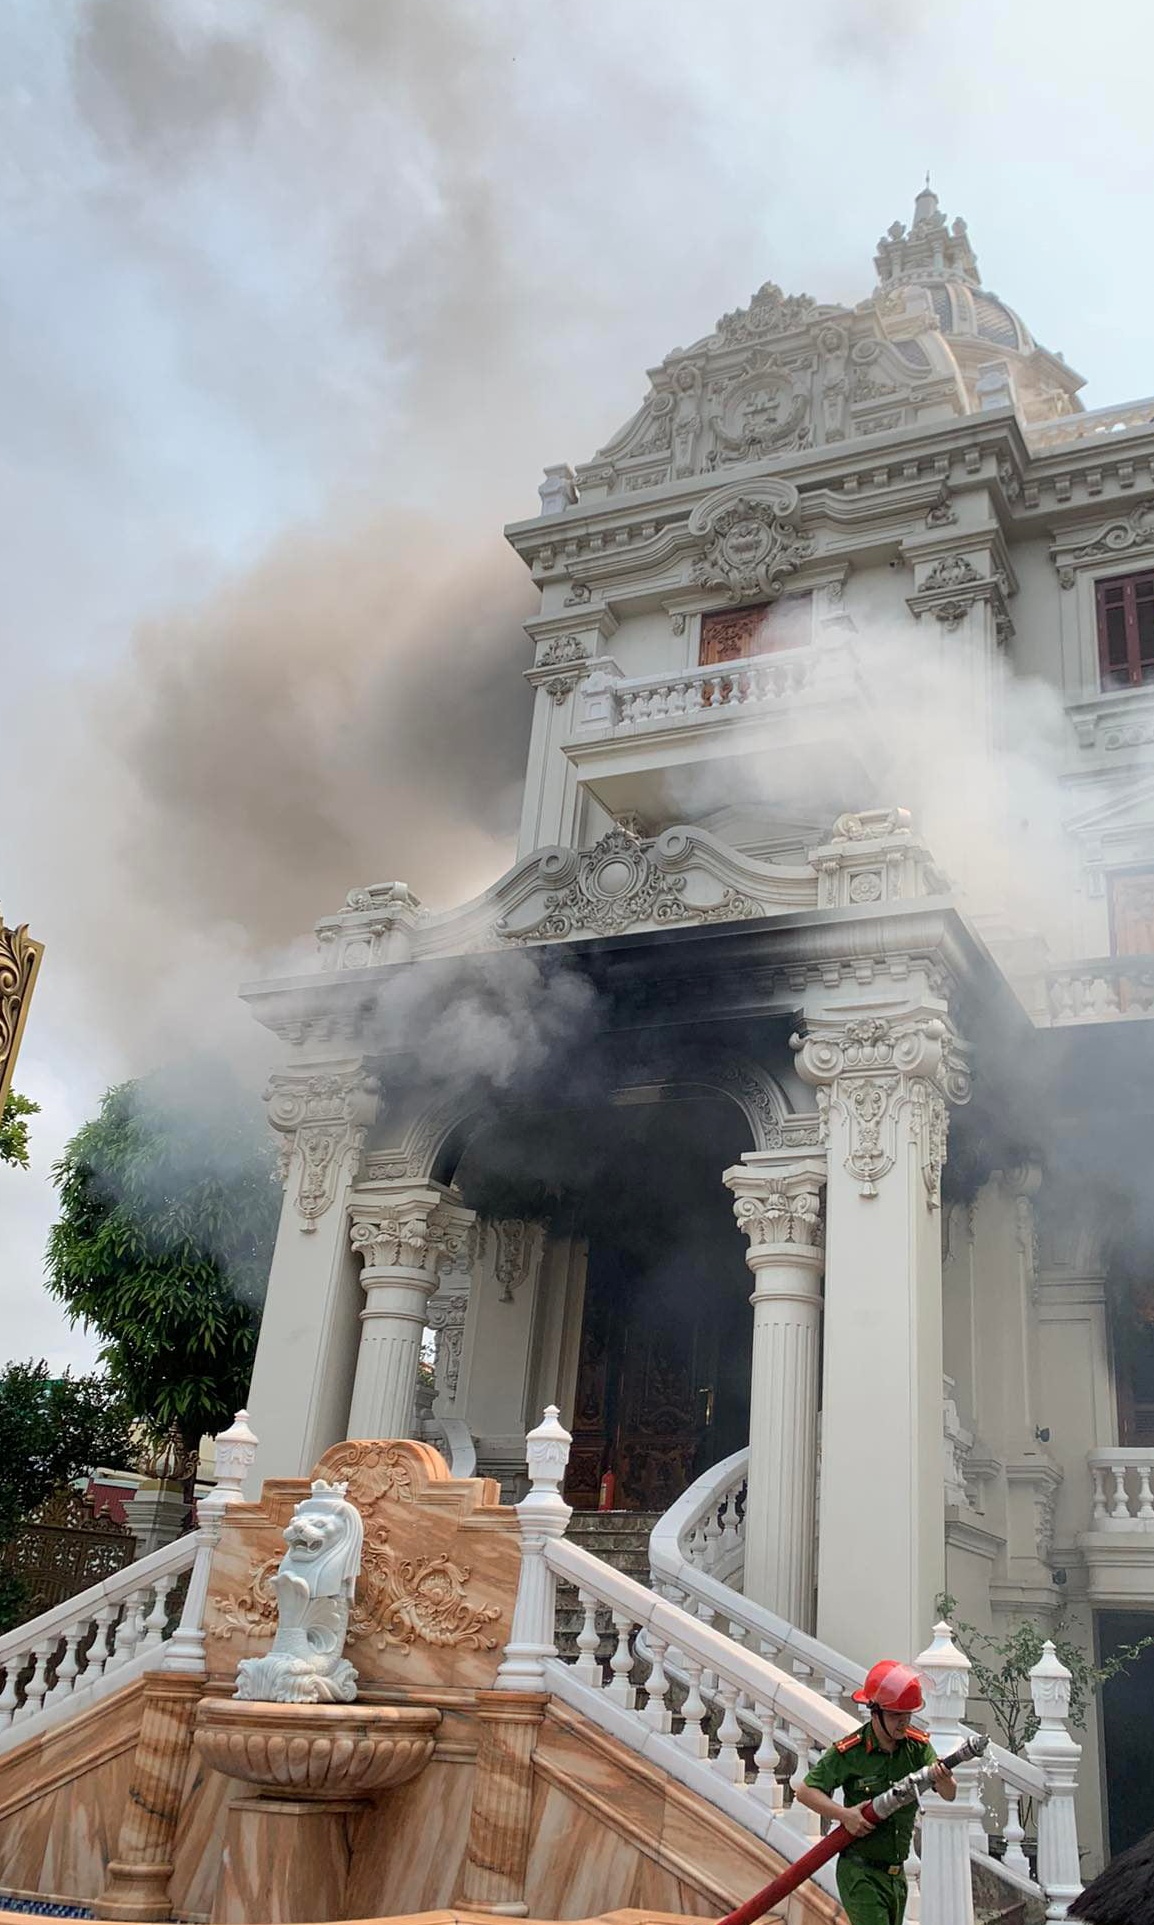 Kinh hoàng đám cháy tại lâu đài trăm tỷ ở Quảng Ninh, người dân phát hoảng vì nhà toàn gỗ quý - ảnh 4